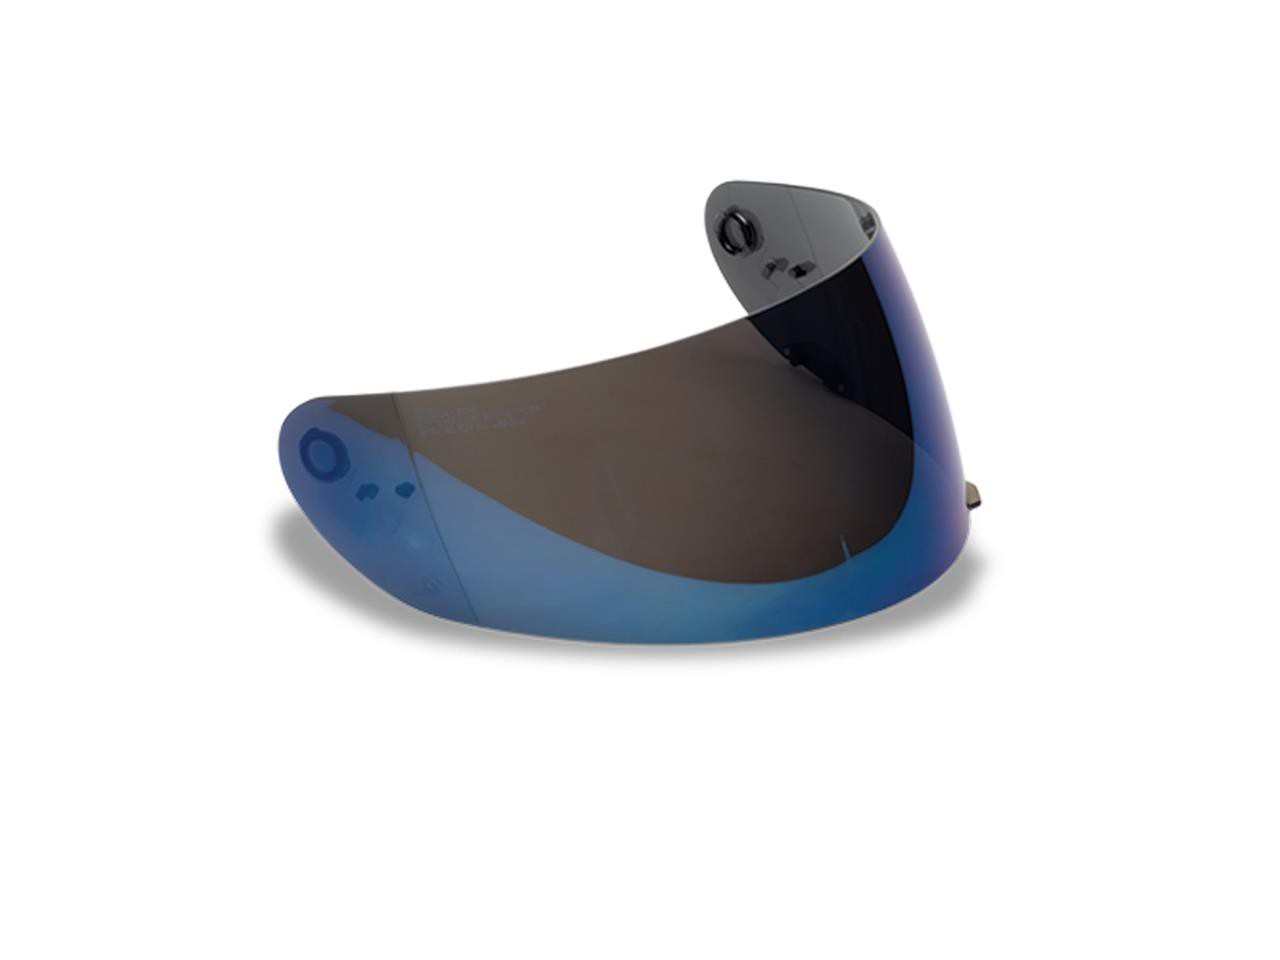 Visière Iridium Bleu Foncé CLICK RELEASE pour Casque Moto BELL RS2 - QUALIFIER - QUALIFIER DLX